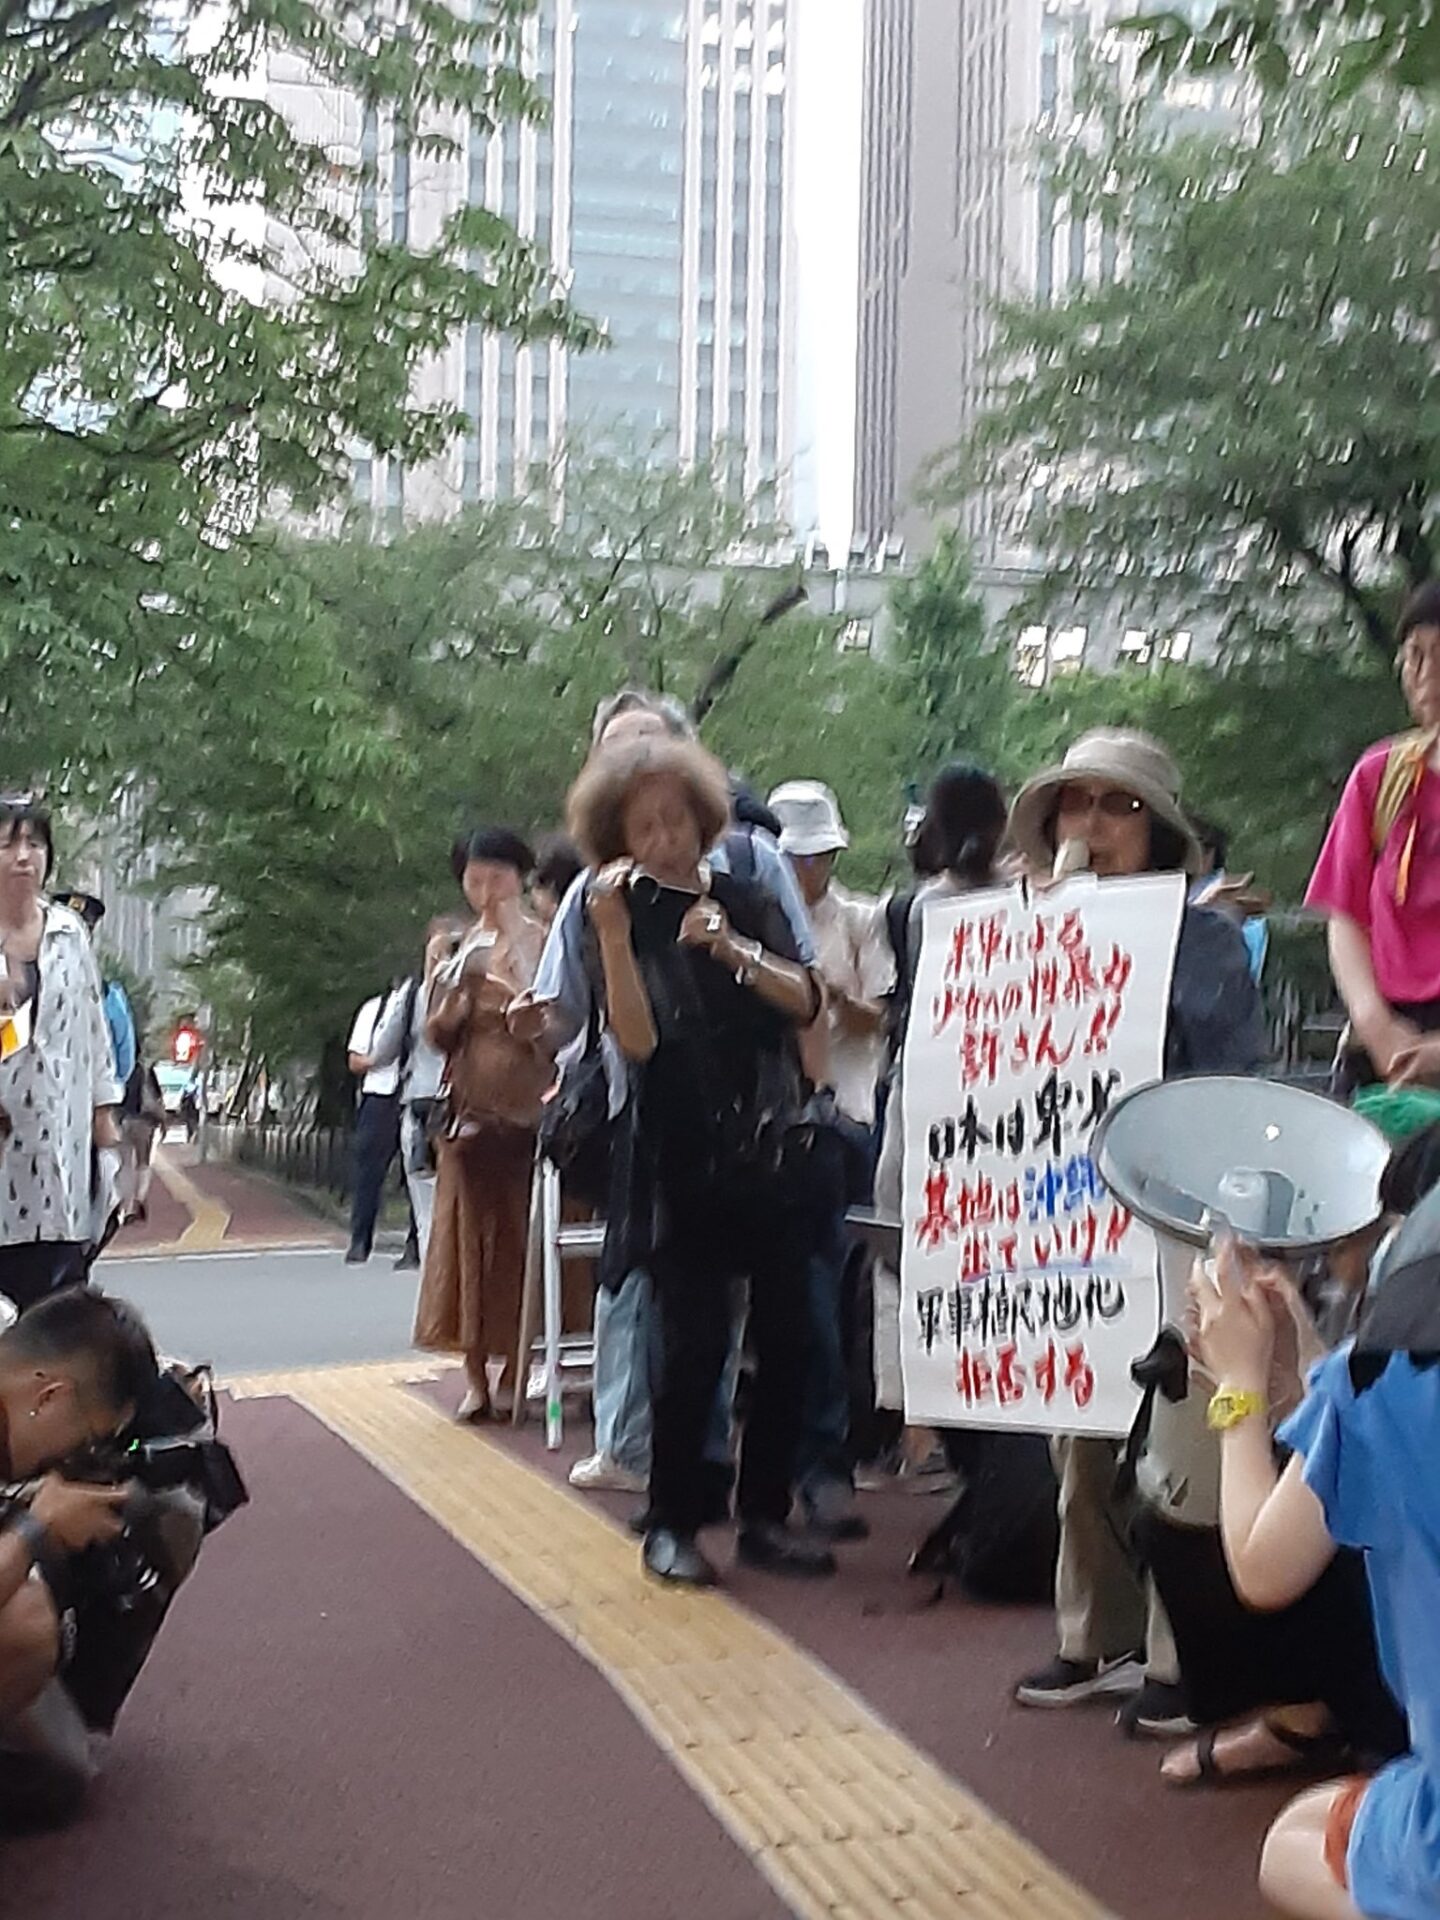 青木初子さんのスピーチの様子。「米軍による少女への性暴力許さん！日本は卑劣／基地は沖縄から出て行け！！／軍事植民地化拒否する」と書かれた大きなポスターを掲げながらマイクを握る。